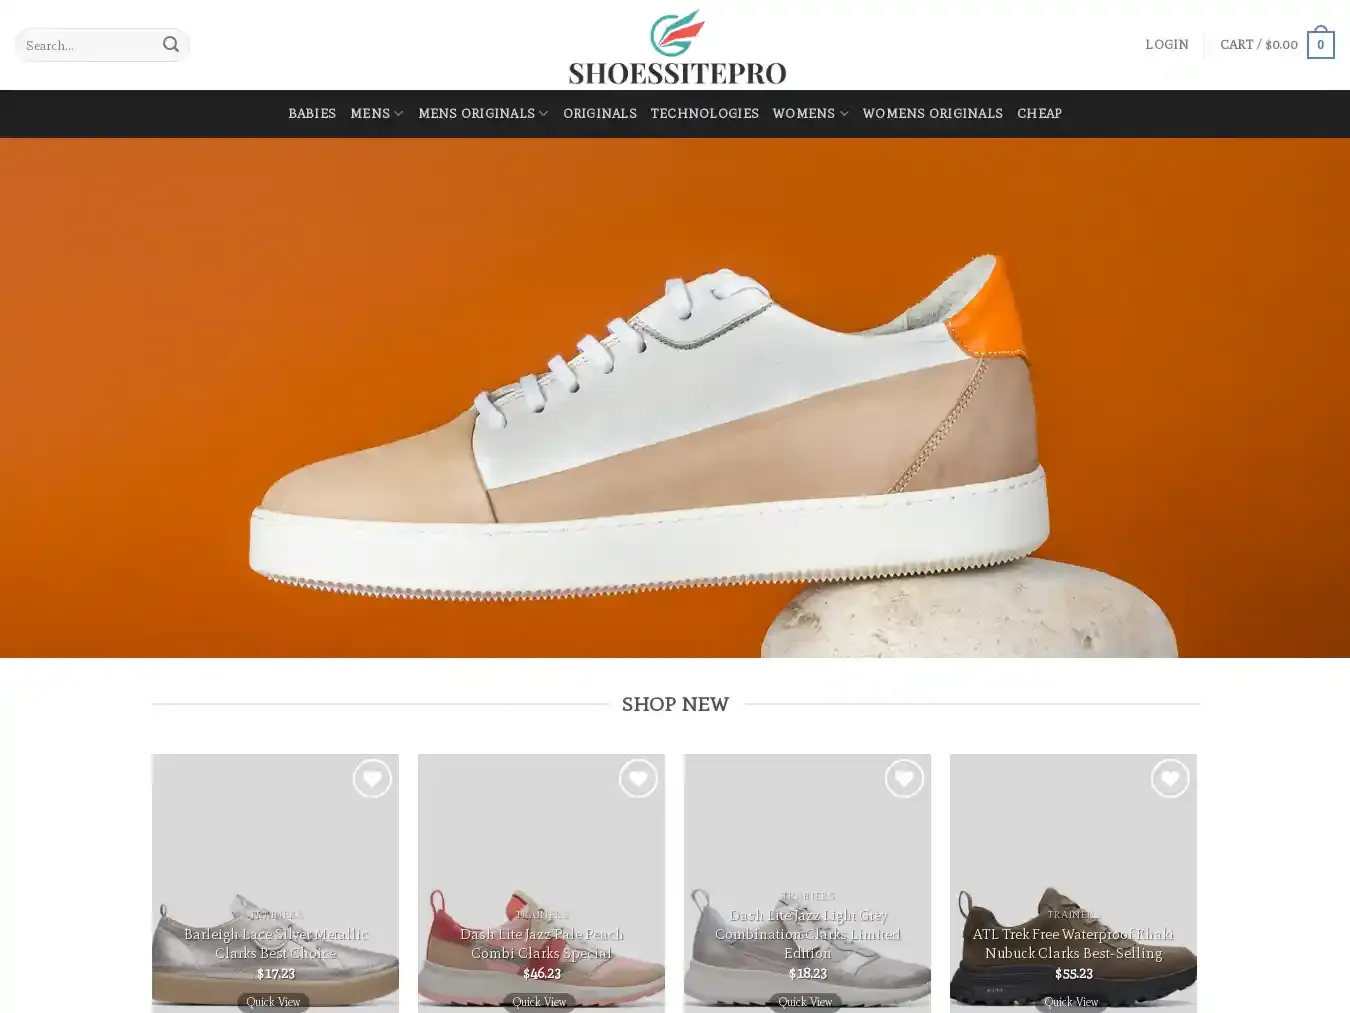 Shoessitepro.com Fraudulent Fashion website.